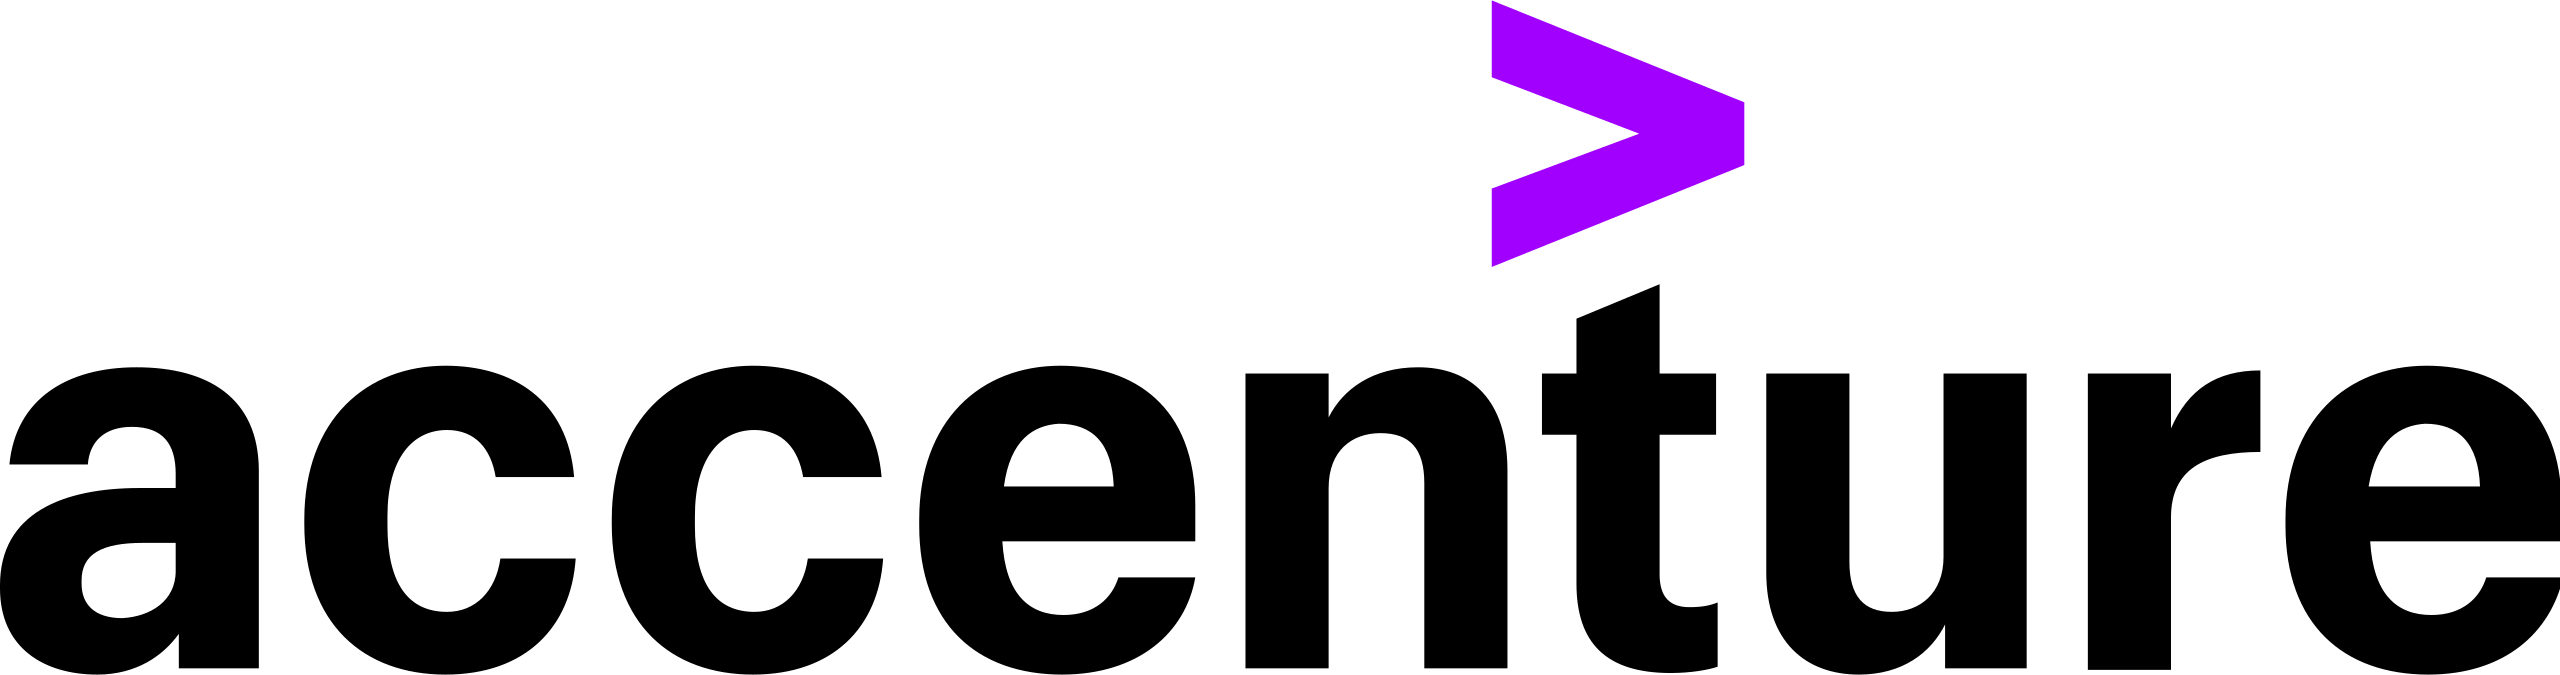 Logo: Accenture